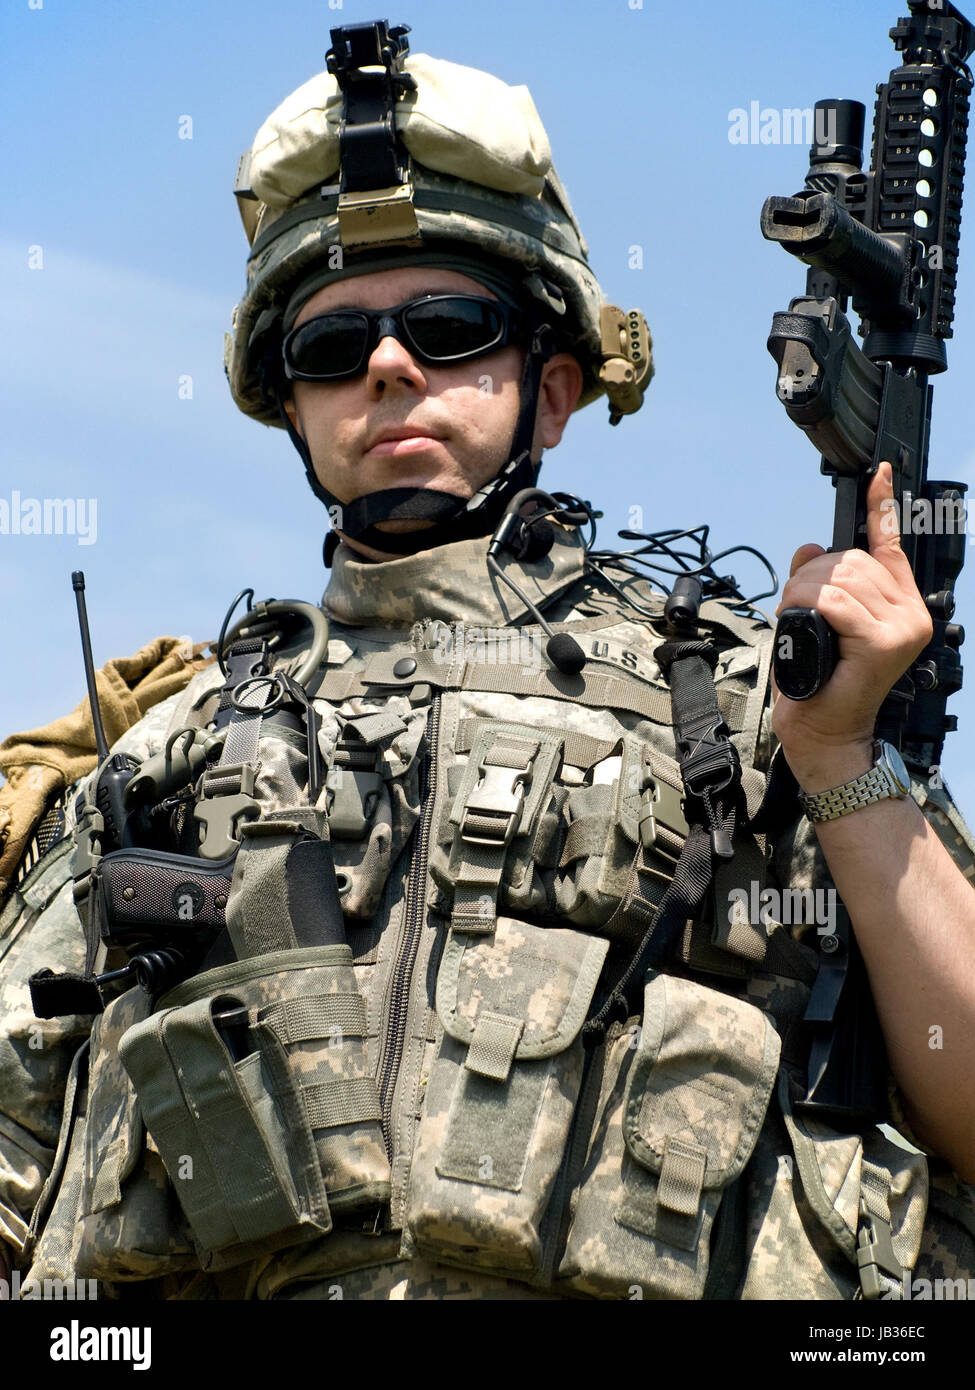 US-Soldaten in uniform mit seinem Gewehr Tarnung Stockfotografie - Alamy